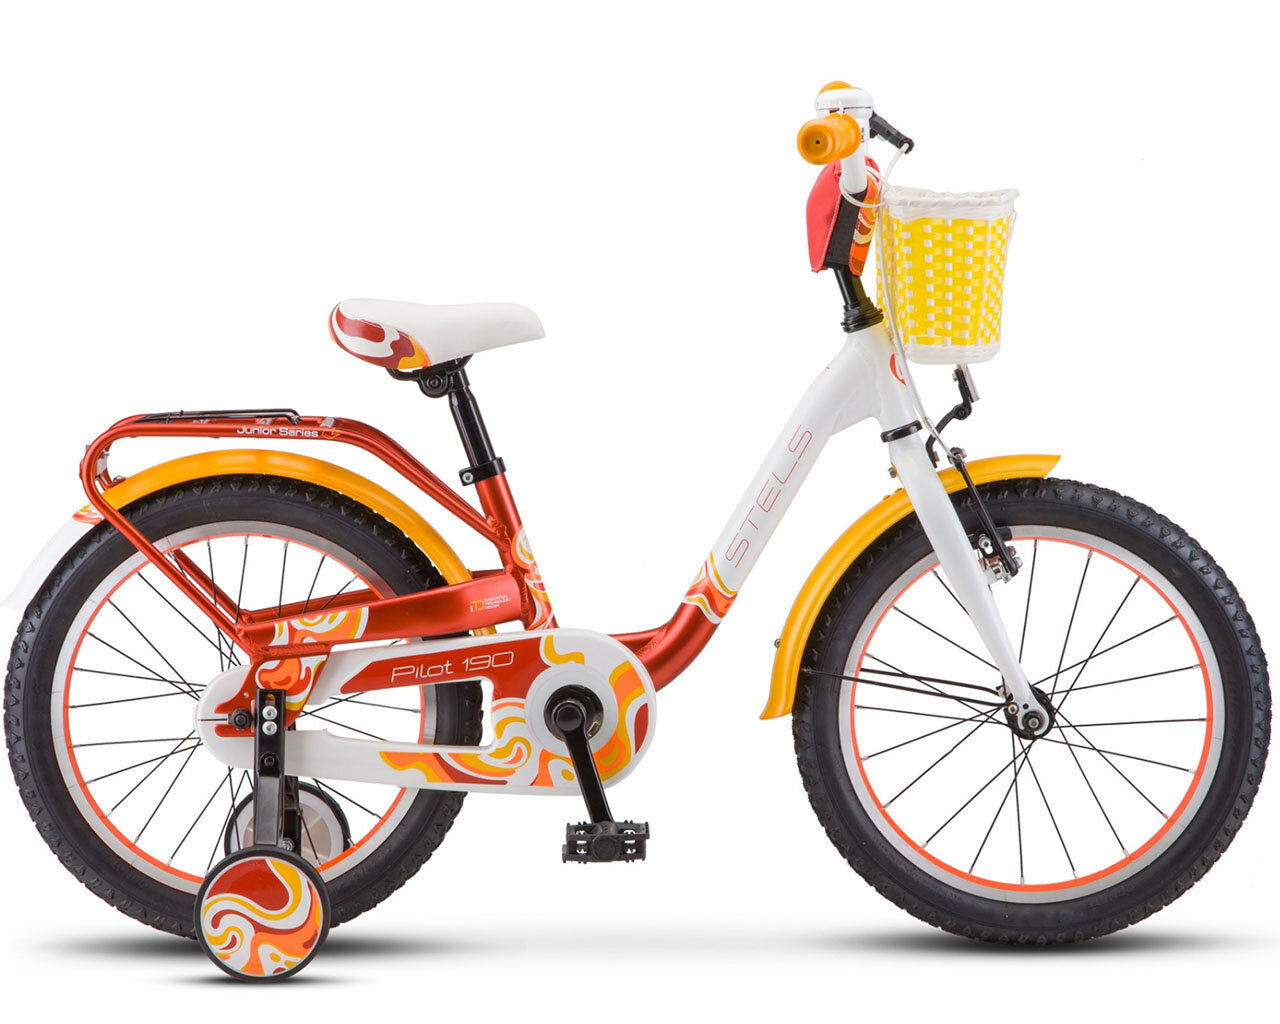 Велосипед STELS Pilot 190 18 V030 (2019) красный/желтый/белый 9" (требует финальной сборки)